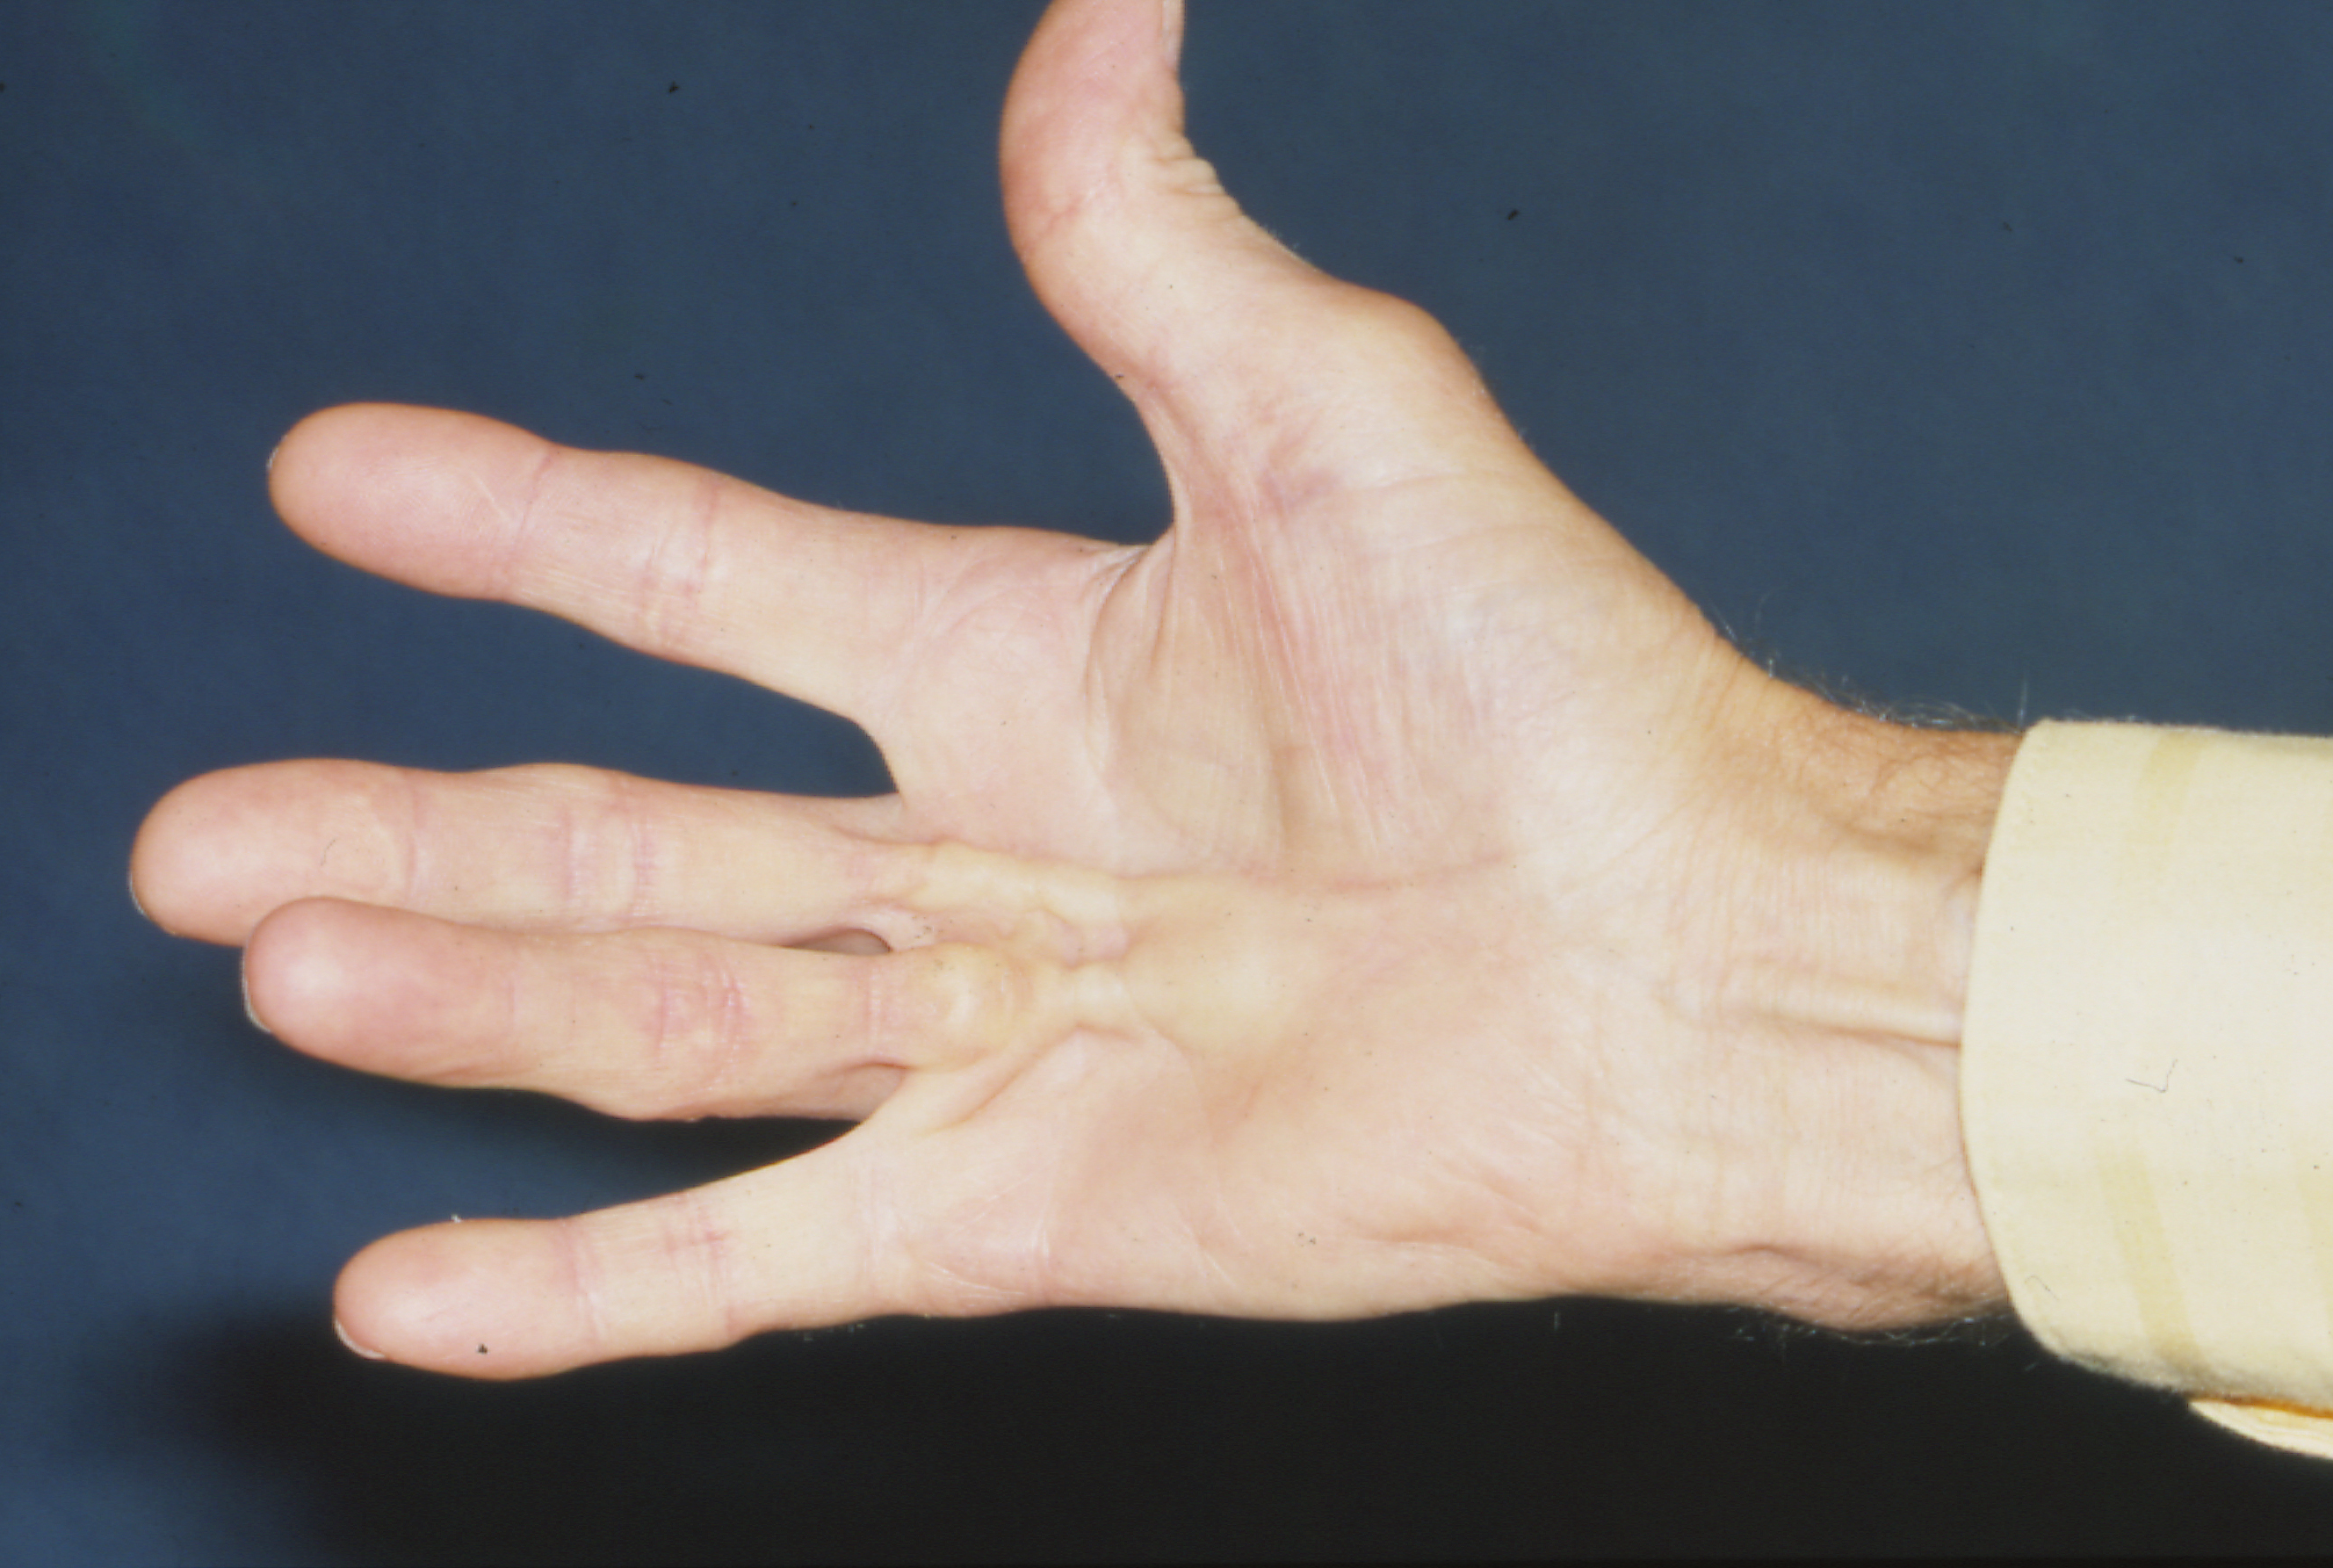 Вальгусная деформация пальца стопы: особенности развития и лечения патологии